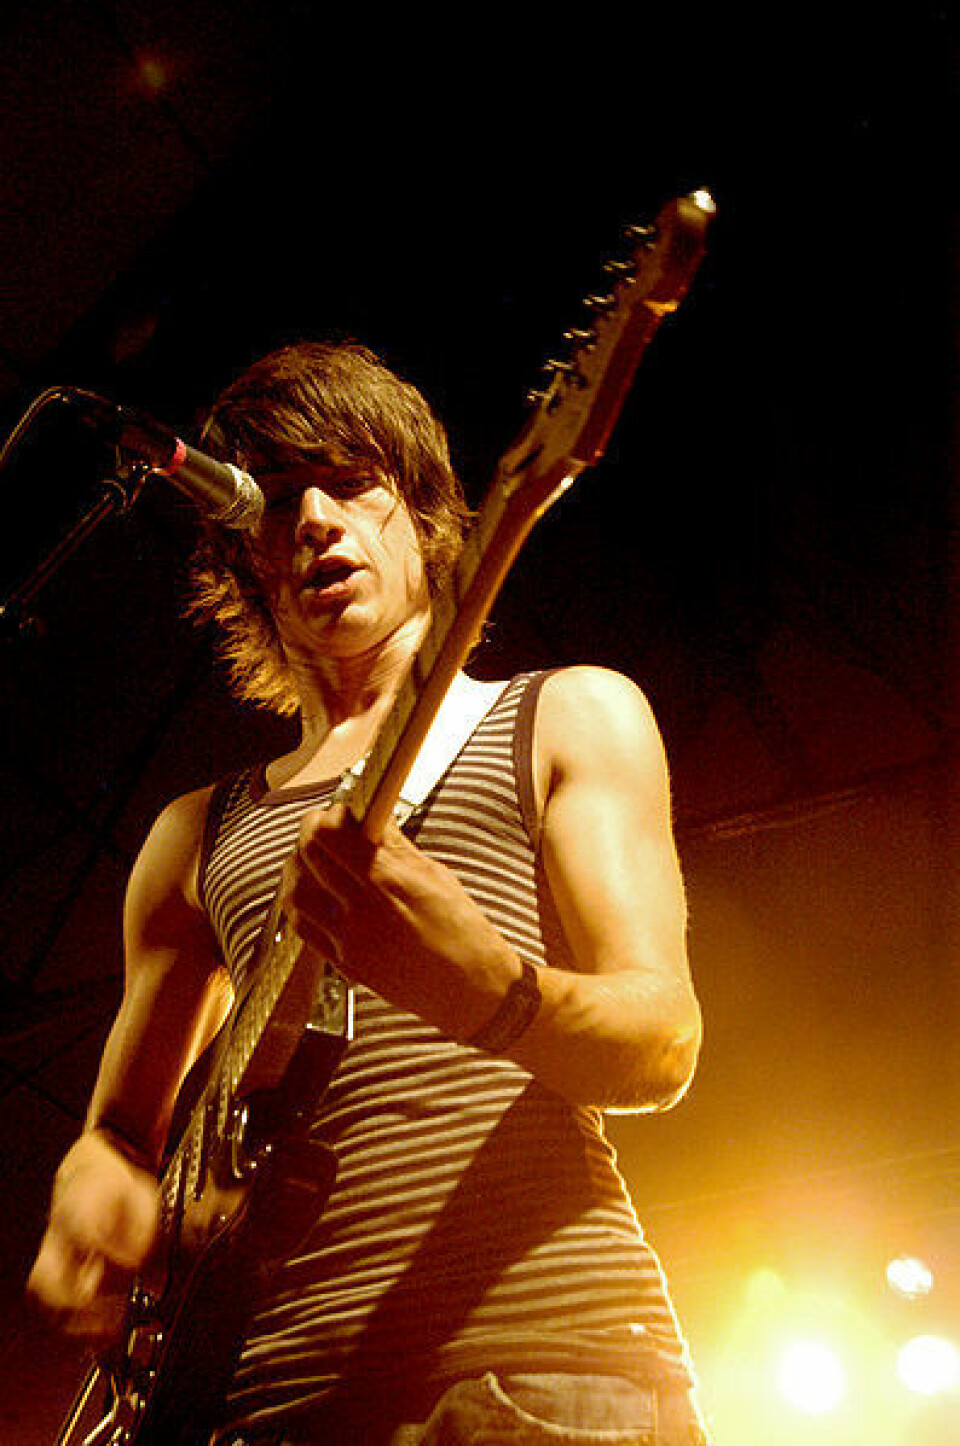 Alex Turner, frontmann i bandet Arctic Monkeys, er en av de som har opplevd suksess utenfor platebransjens faste mønster. Men de er unntaket som bekrefter regelen for dagens musikere. (Foto: Frida Borjeson/Flickr Creative Commons)